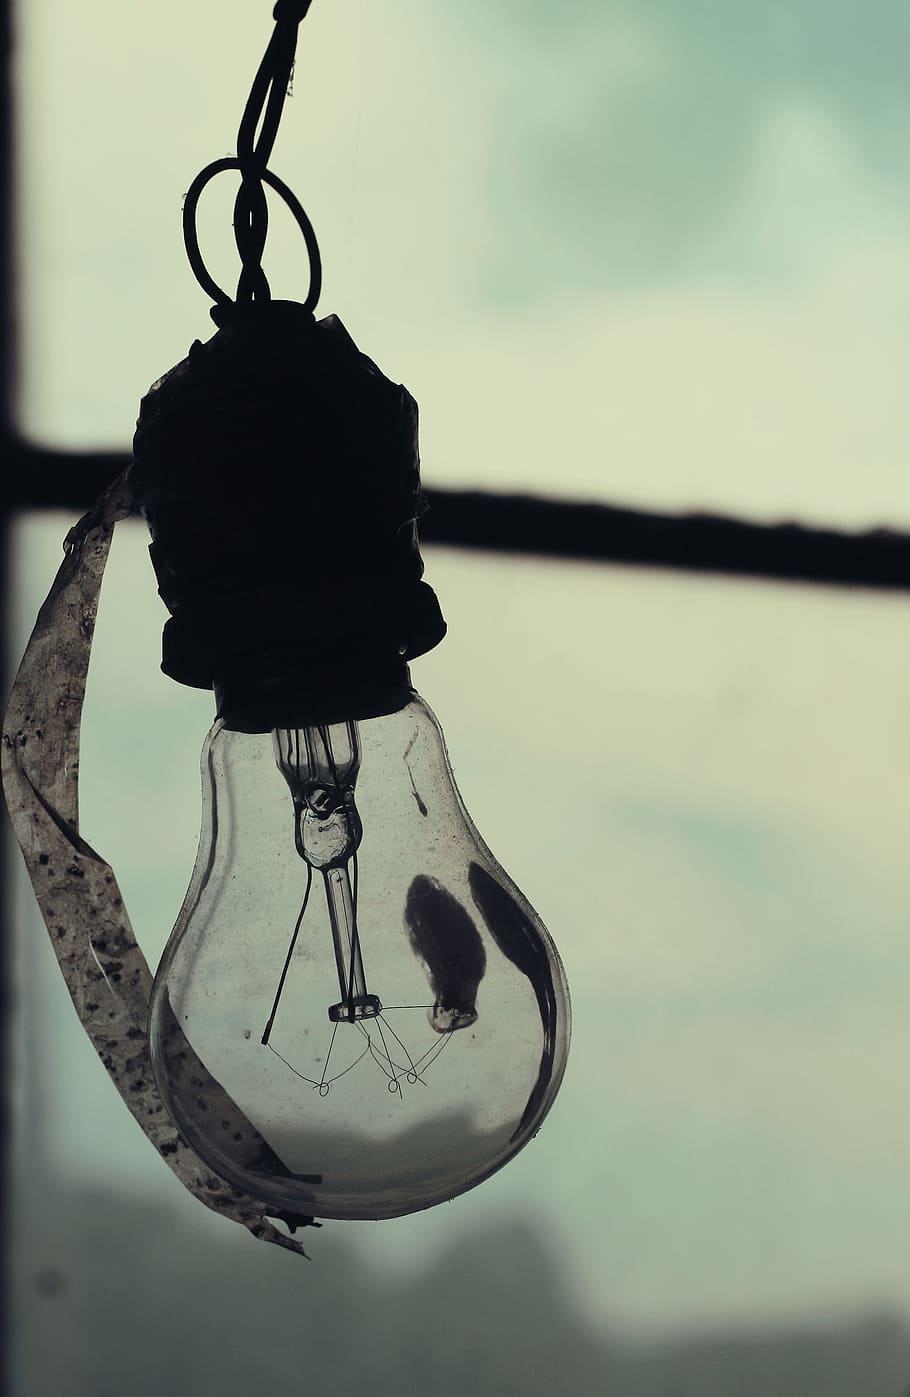 bulb, light, electricity, energy, lightbulb, power, hanging